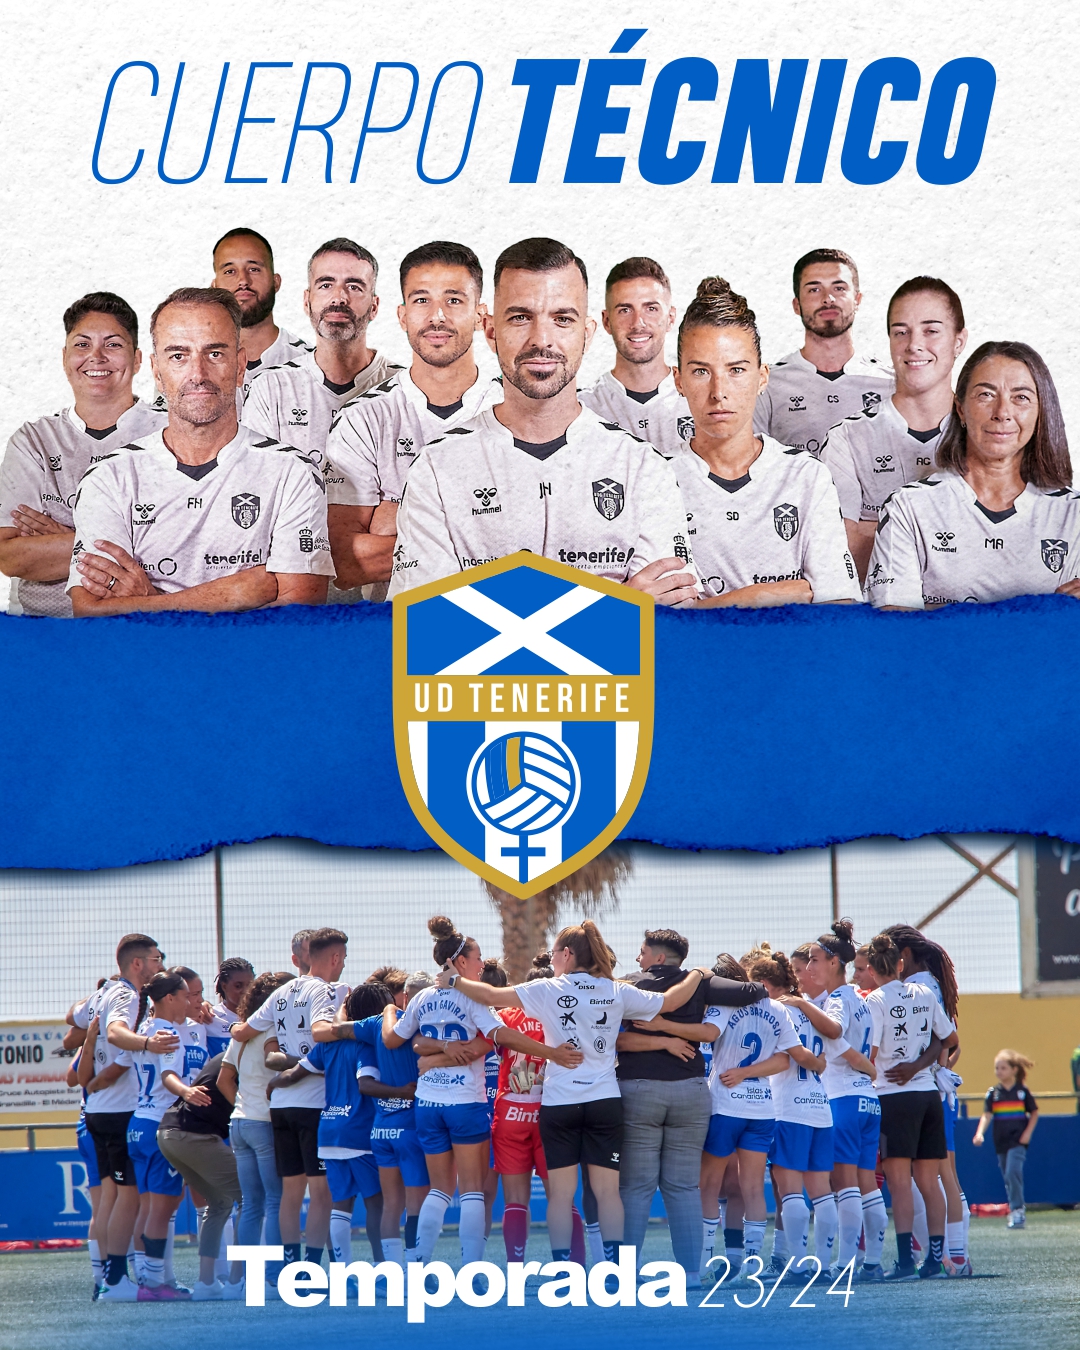 La UD Tenerife abre la temporada 23-24 con un staff técnico de gran nivel 